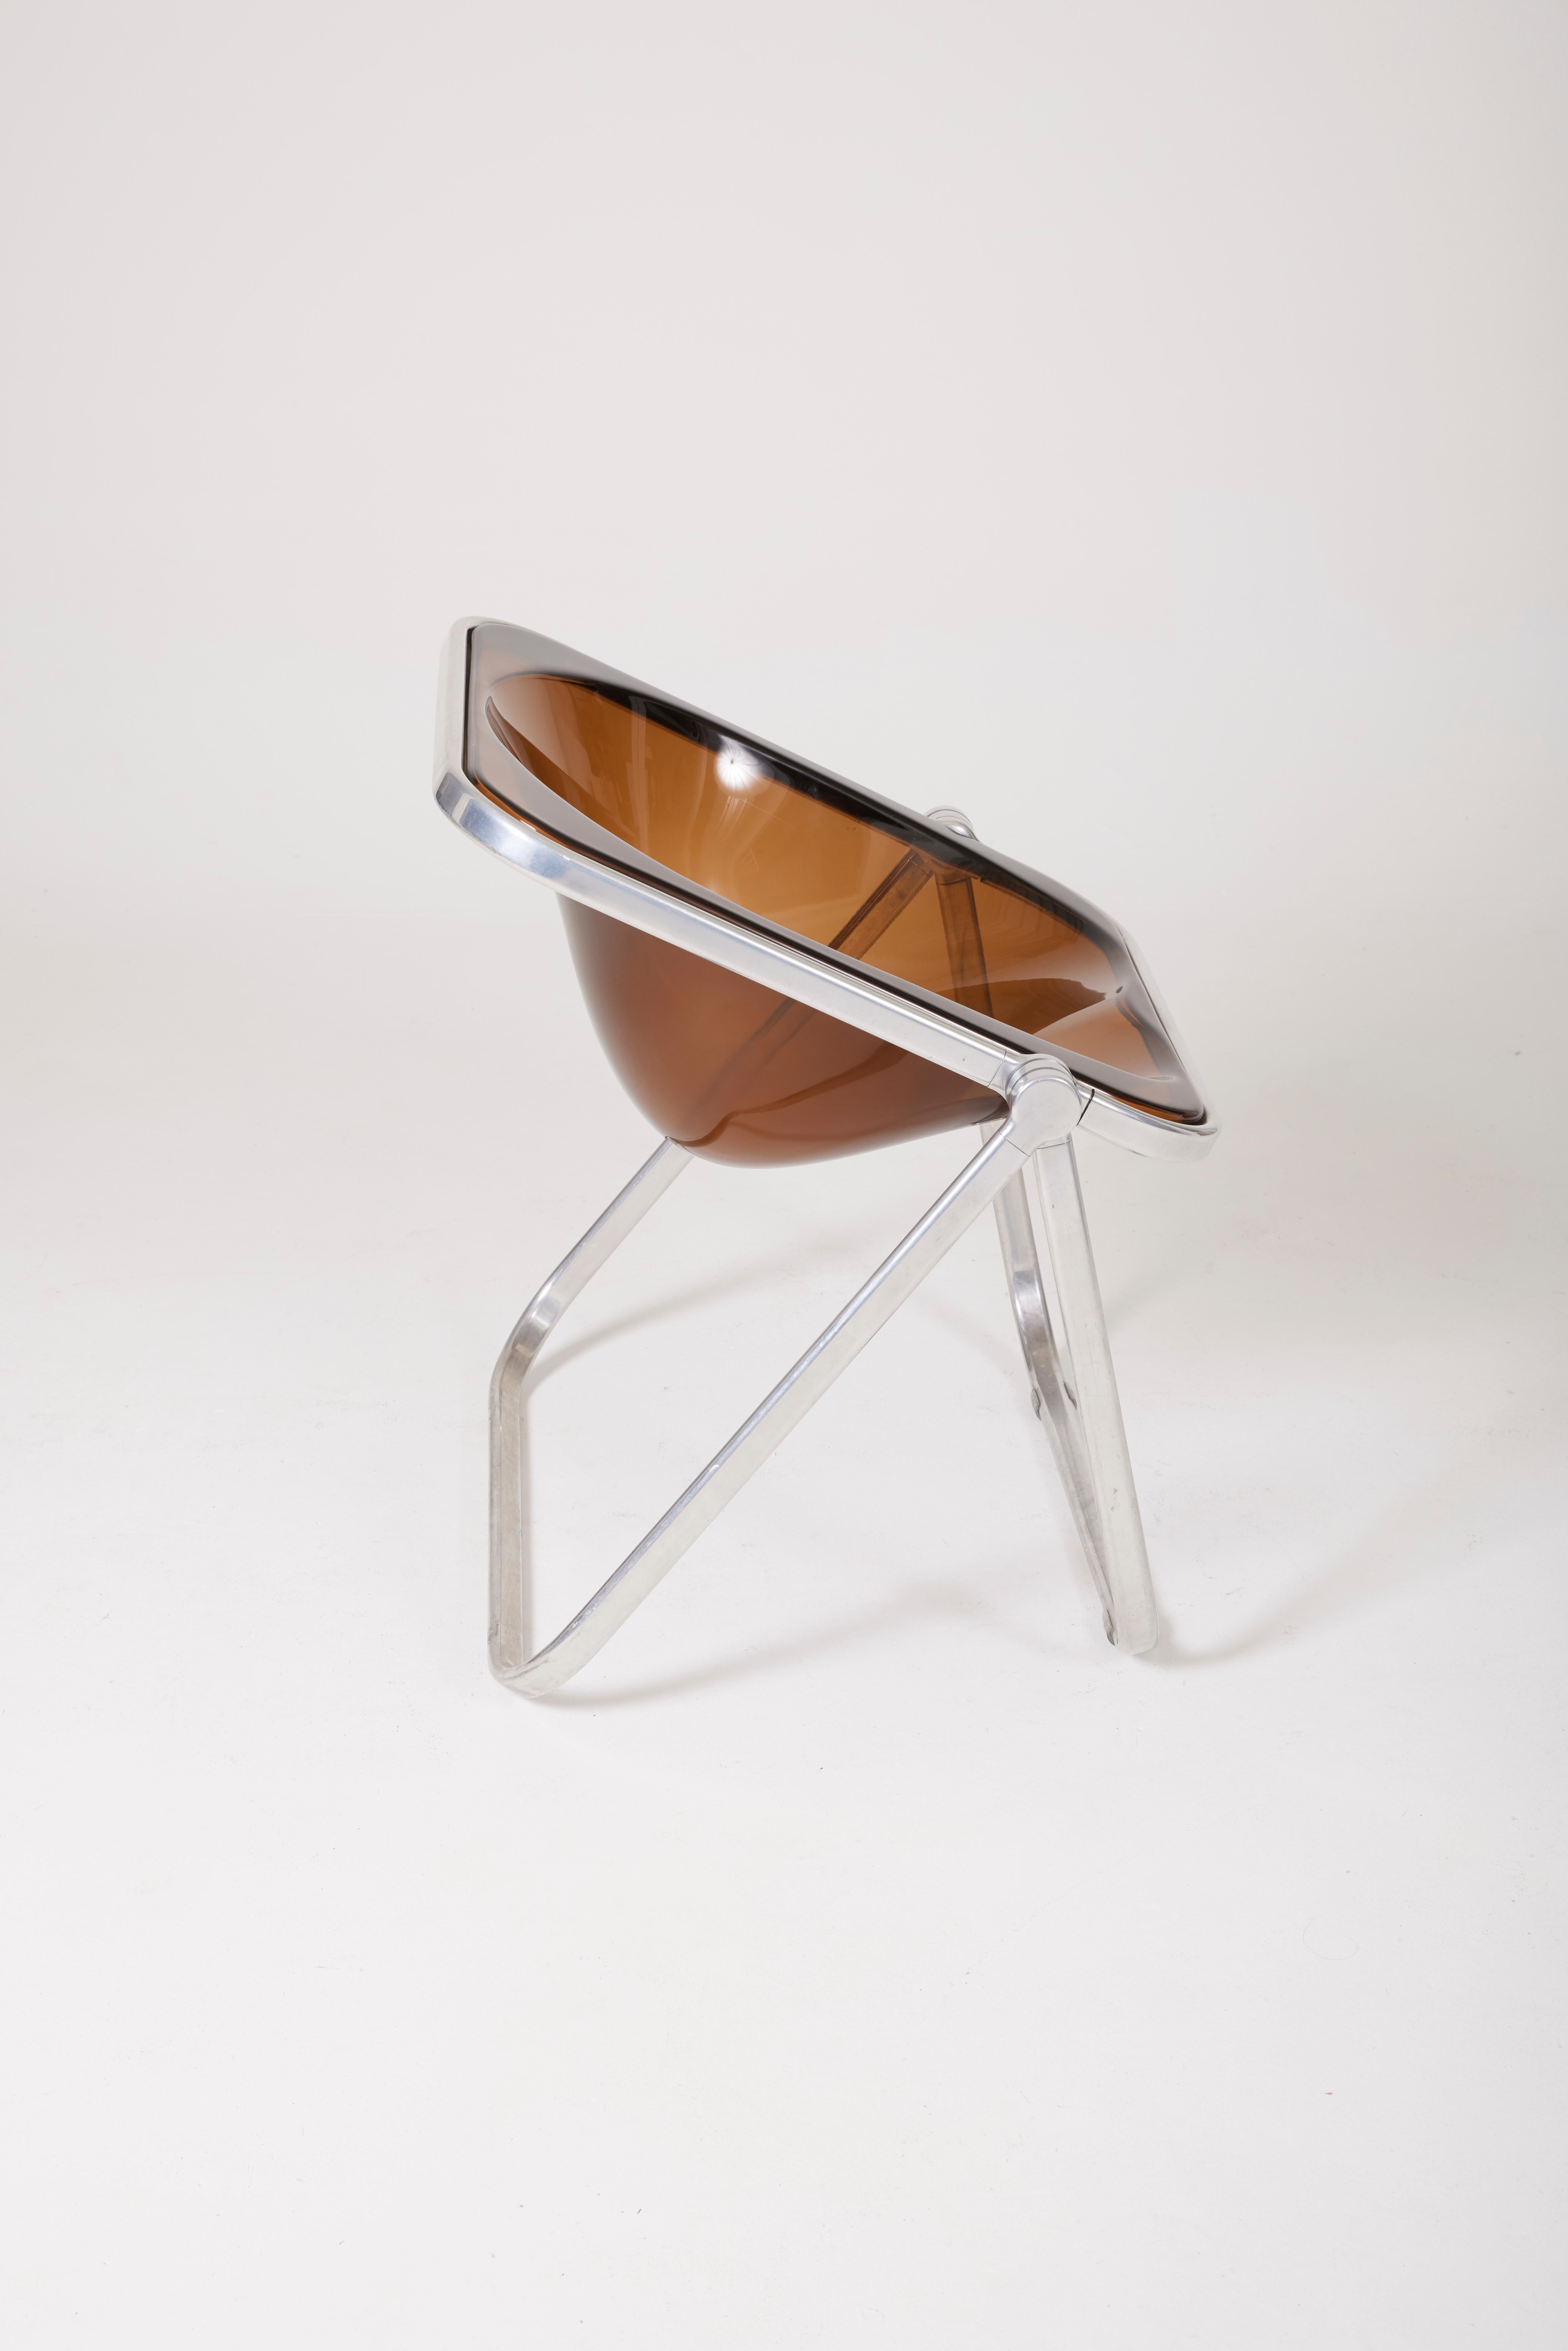 'Plona' Plexiglass Armchair by Giancarlo Piretti 3